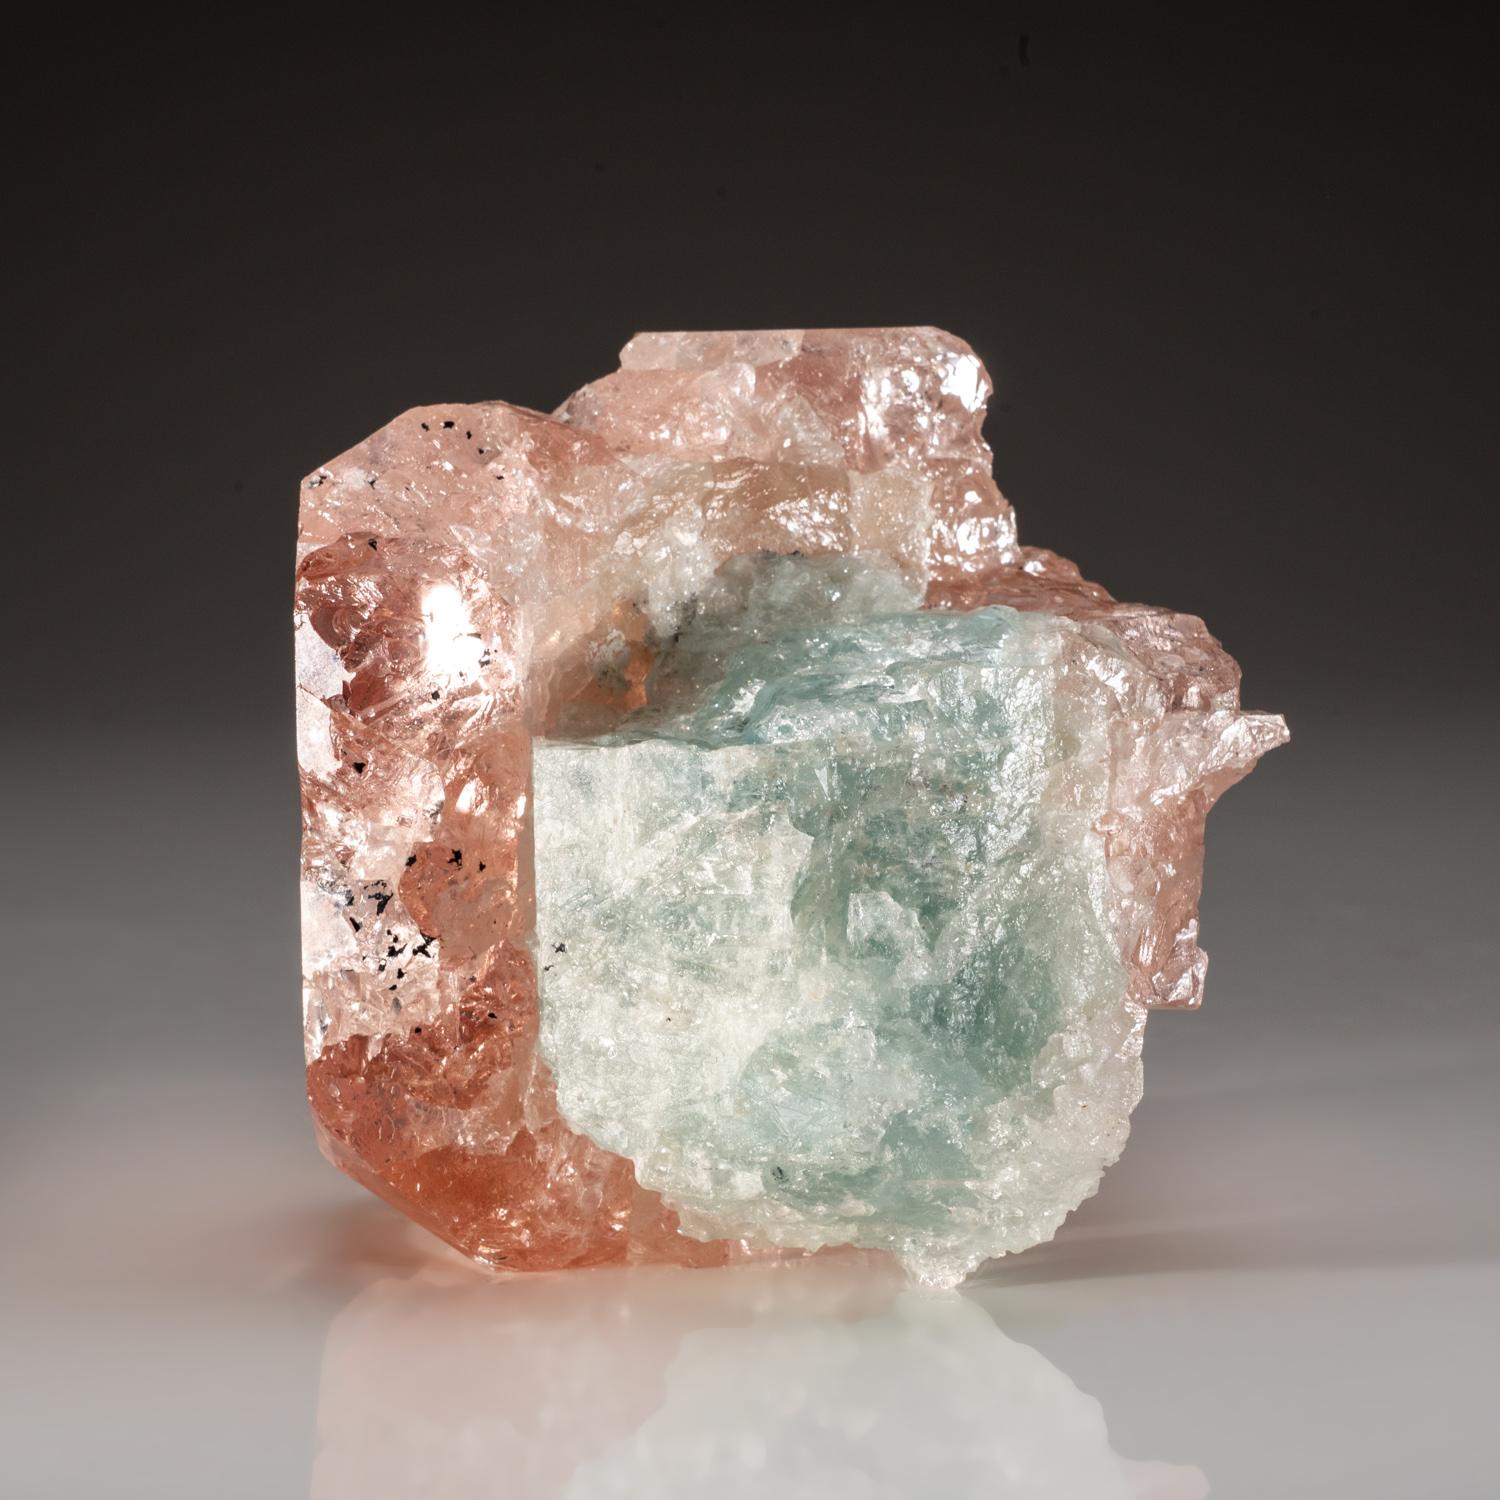 De la pegmatite de Mawi, province du Nuristan, Afghanistan

Cristal de morganite rose à double terminaison avec aigue-marine. Le front présente des faces de terminaison pinacoïde basales plates avec des faces secondaires. Les cristaux d'aigue-marine